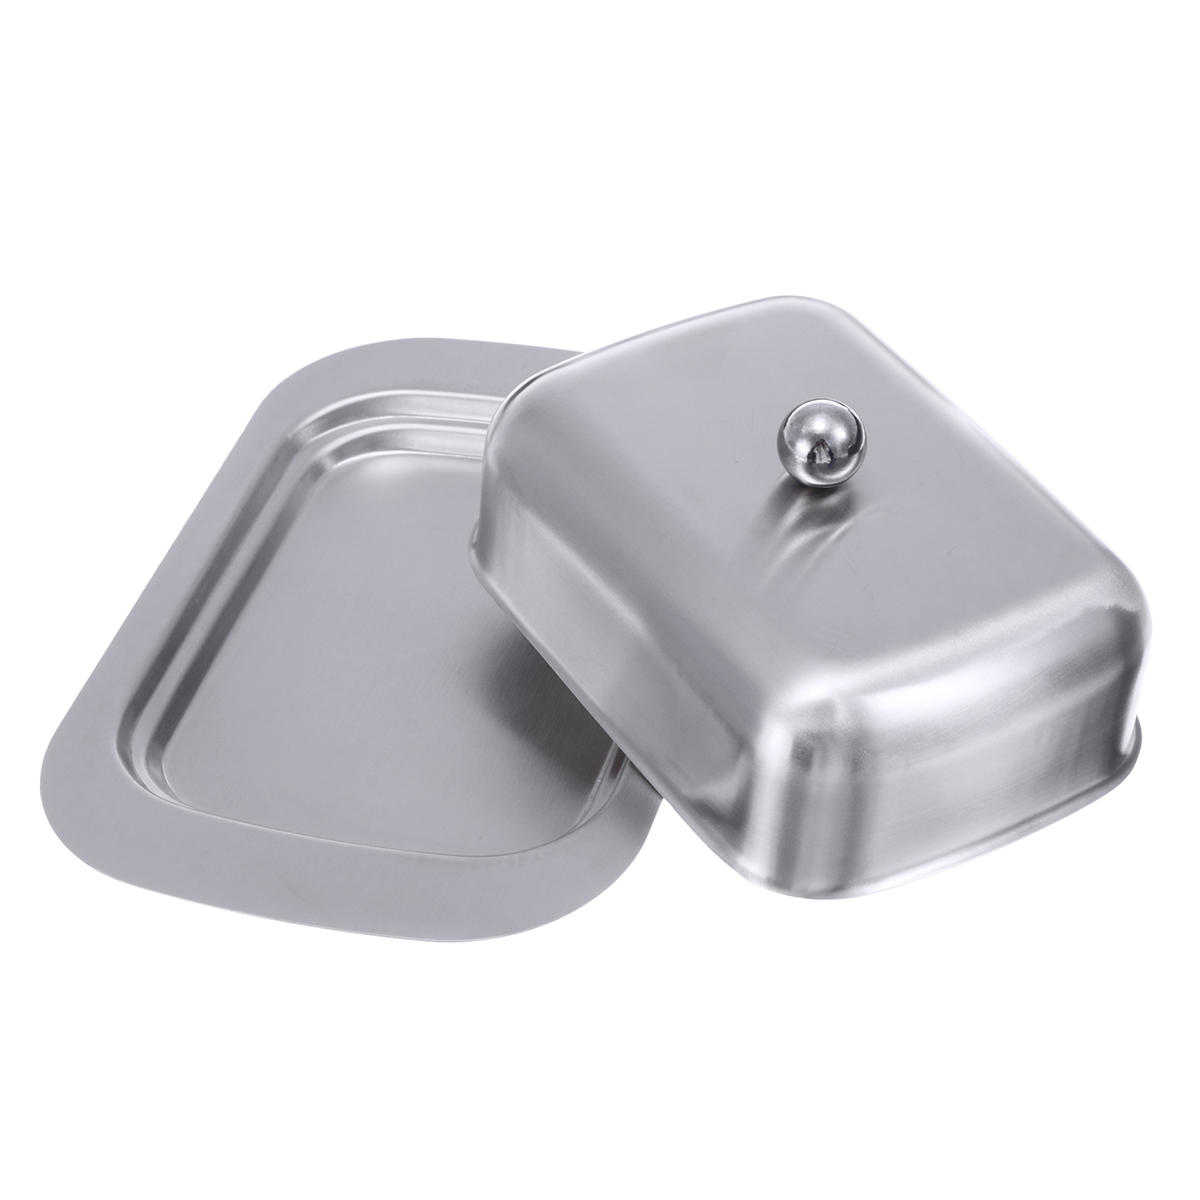 IPRee® Edelstahl Butter Dish Box Container Käse Server Storage Keeper Tray Dish Für die Aufbewahrung in der Küche	